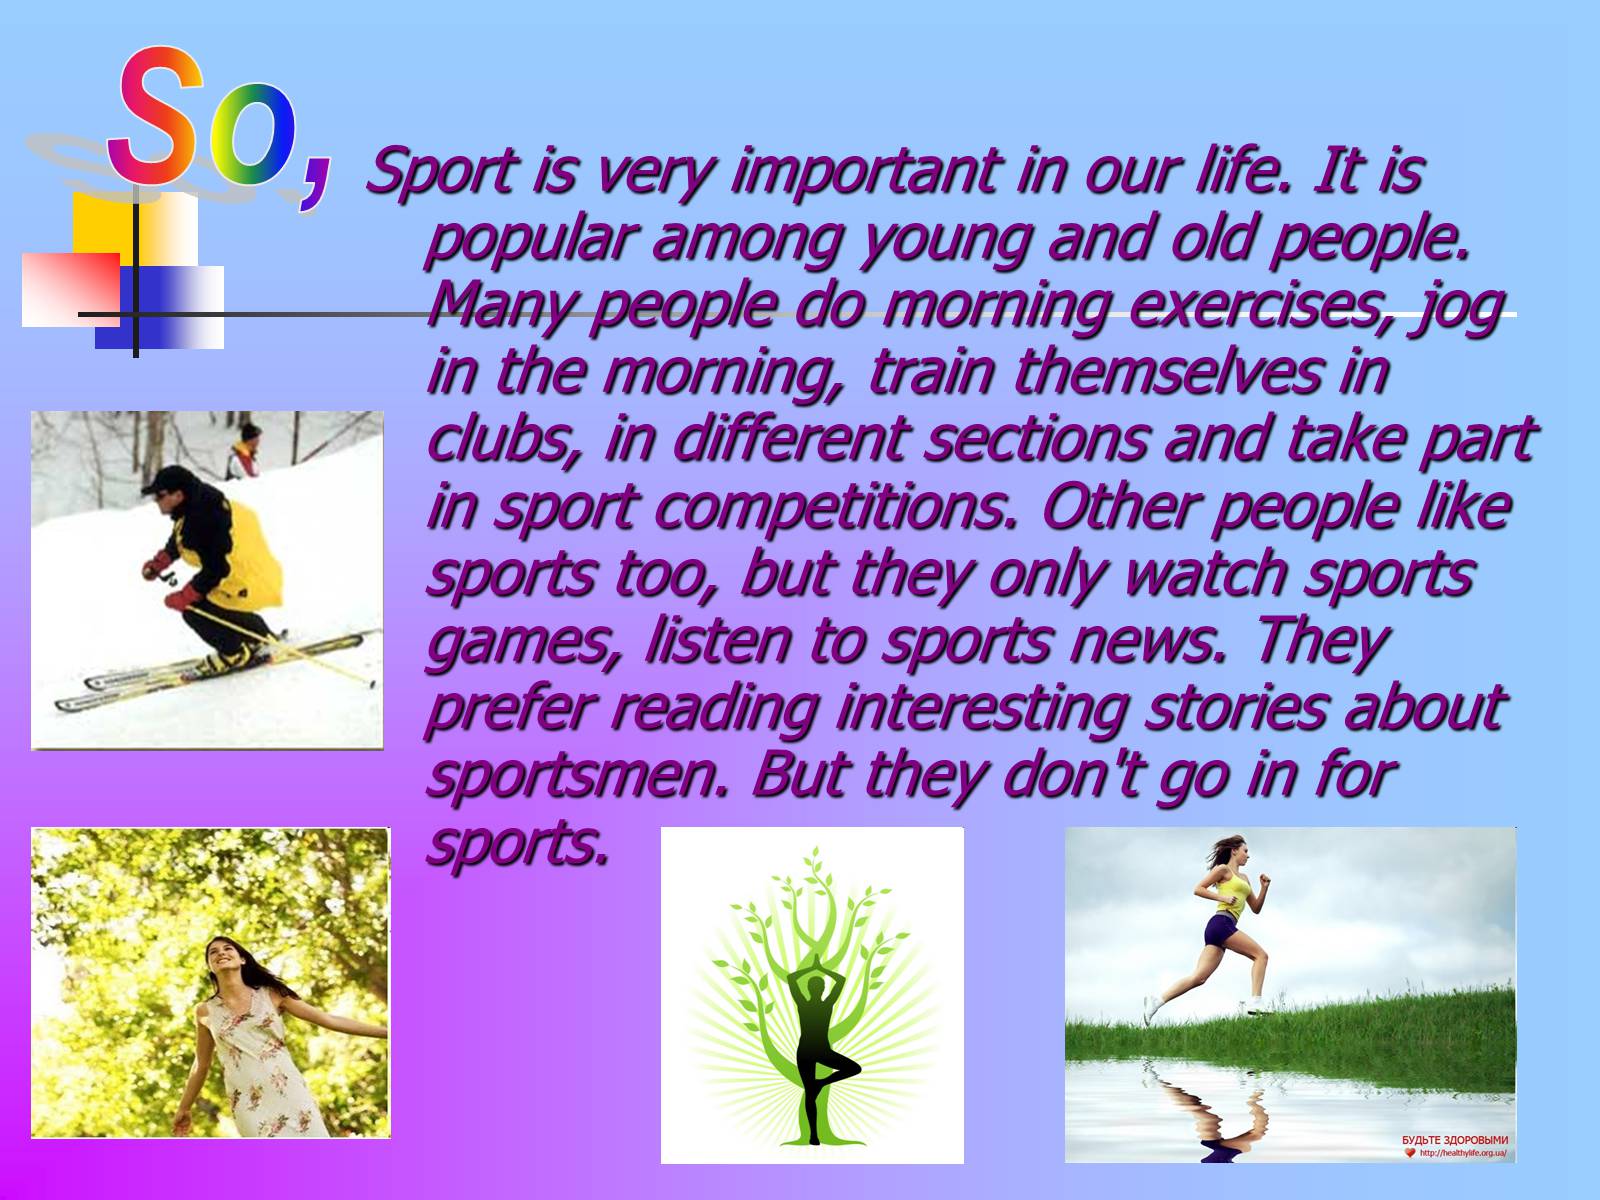 My sporting life. Презентация на тему спорт. Sport in our Life презентация. Проект по английскому на тему спорт. Проект по английскому языку здоровый образ жизни.